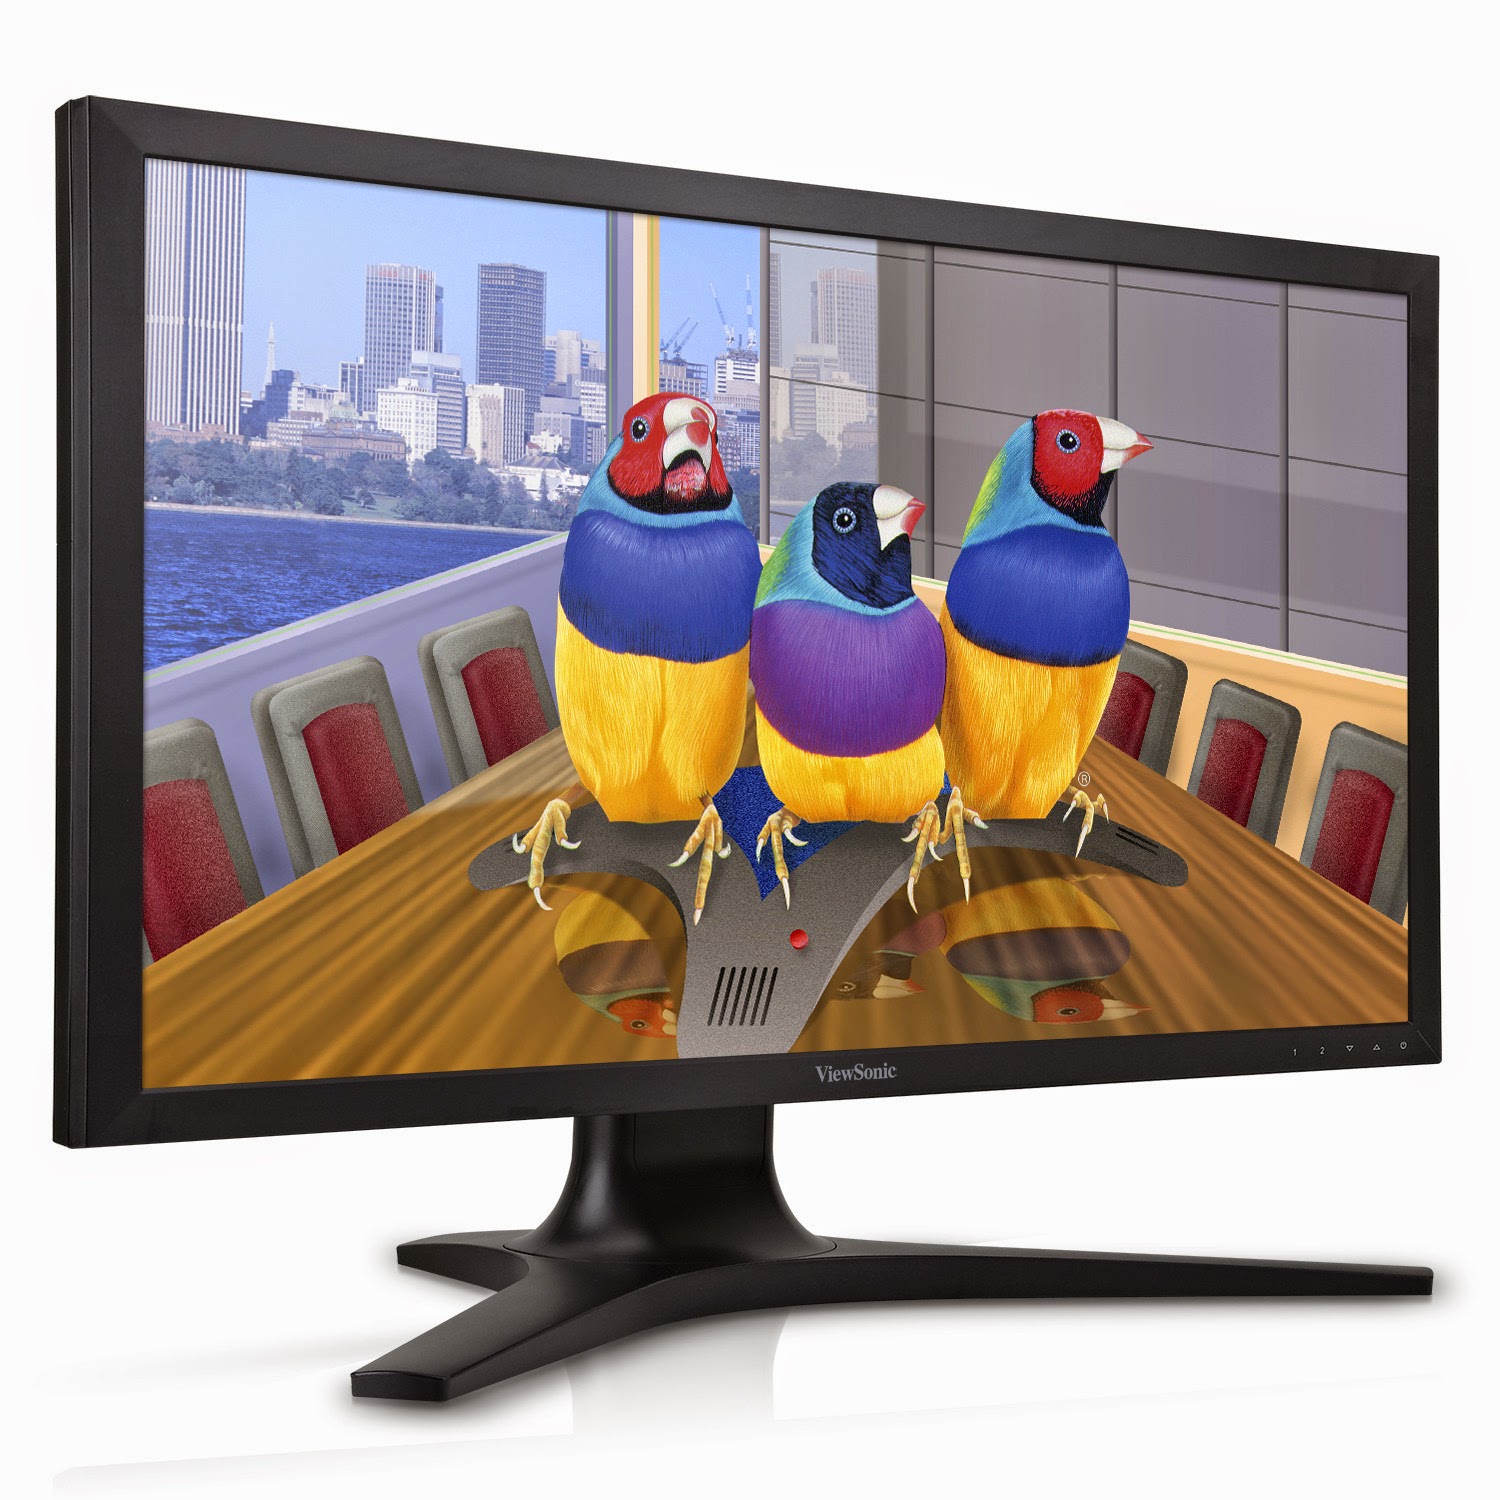 Νέα σειρά Ultra HD monitors από την ViewSonic - Φωτογραφία 1